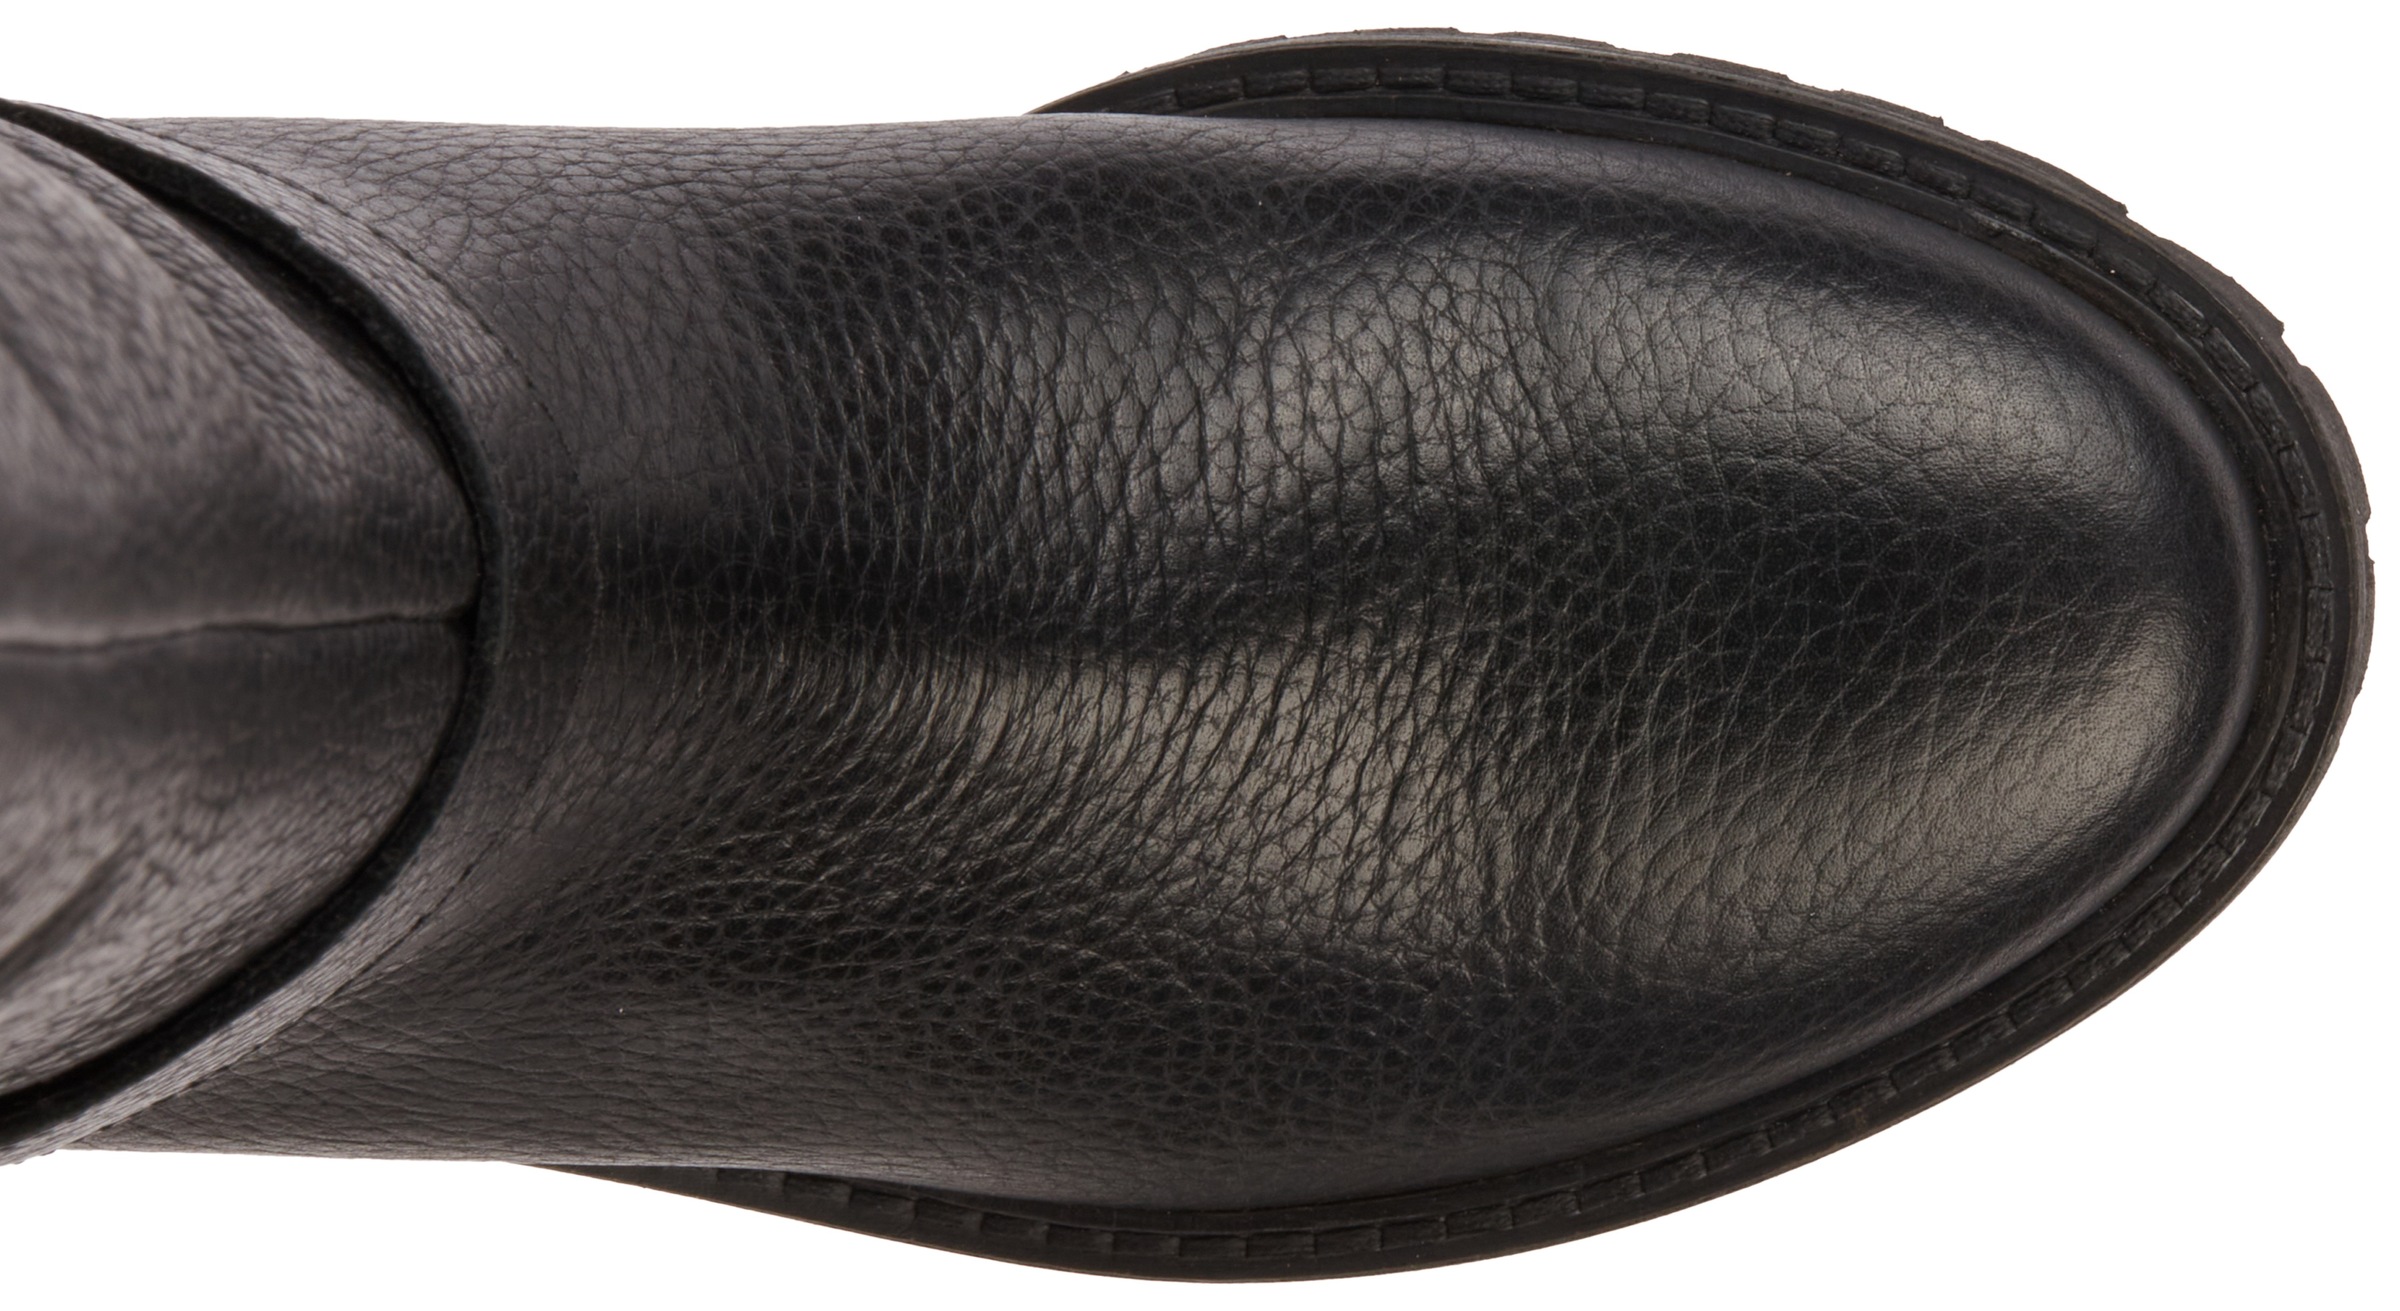 Geox Stiefel »D HOARA«, Langschaft Stiefel, Festtagsschuh, Elegante Stiefel mit Reißverschluss